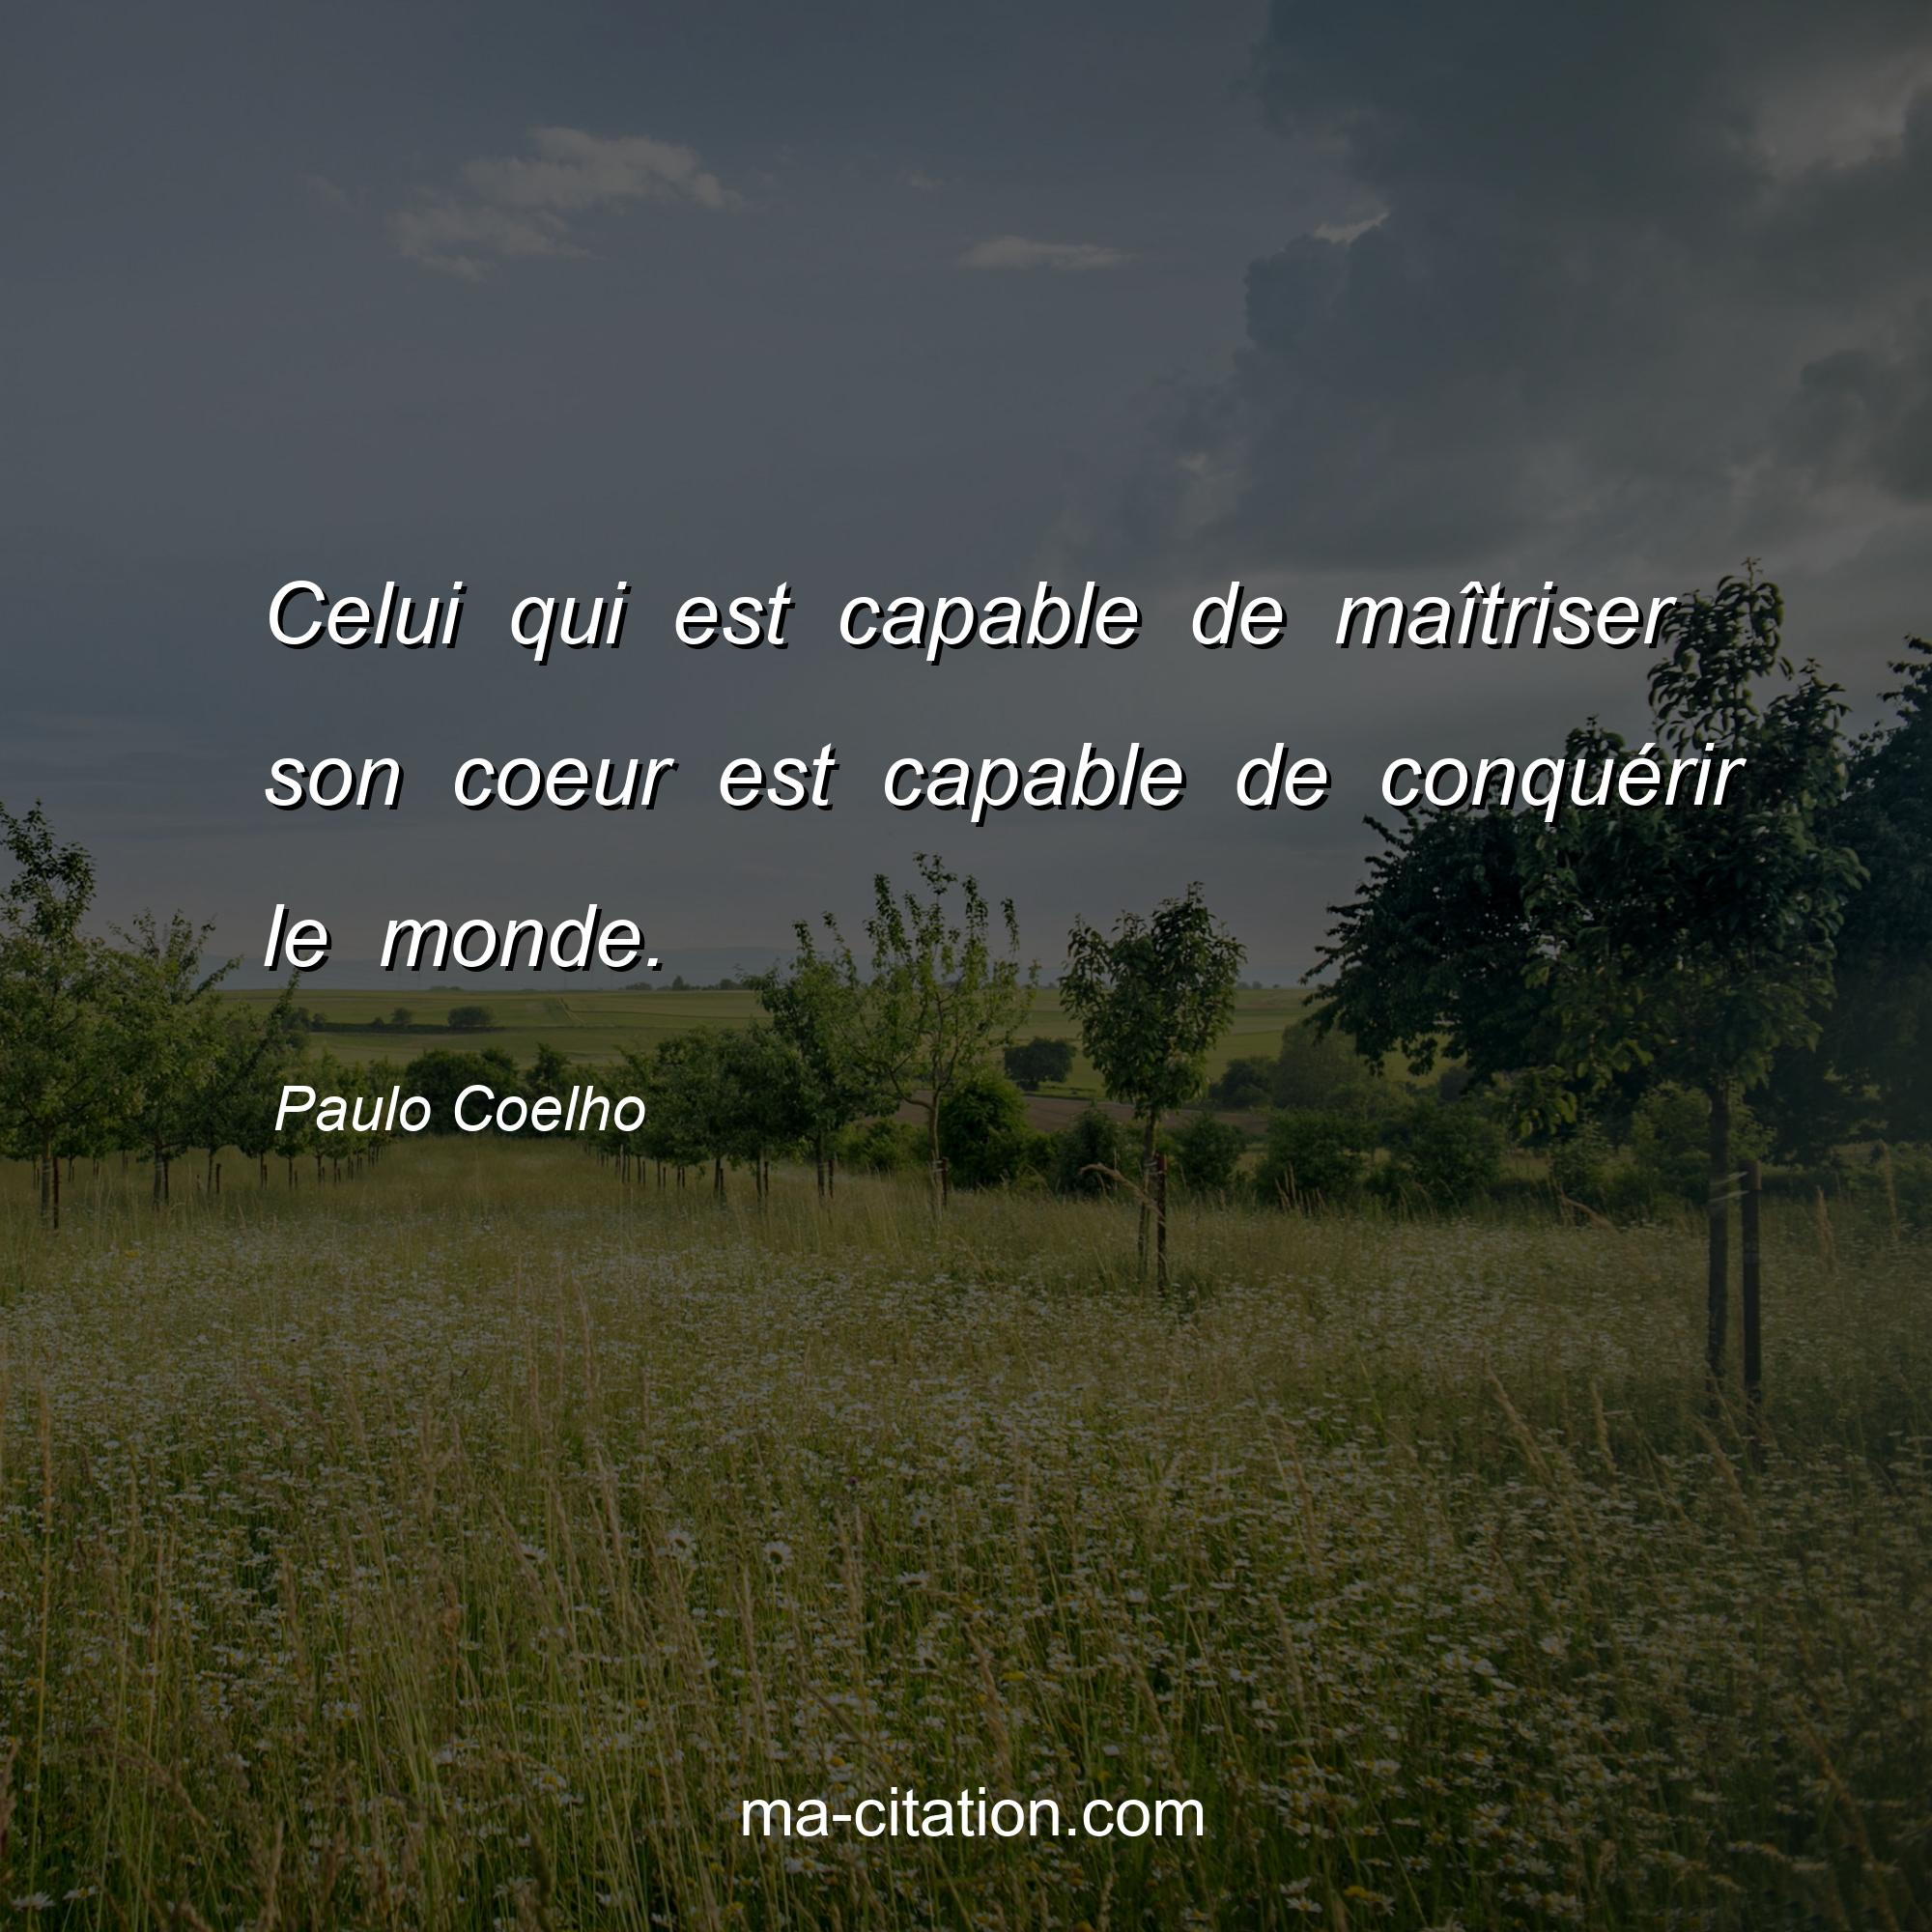 Paulo Coelho : Celui qui est capable de maîtriser son coeur est capable de conquérir le monde.